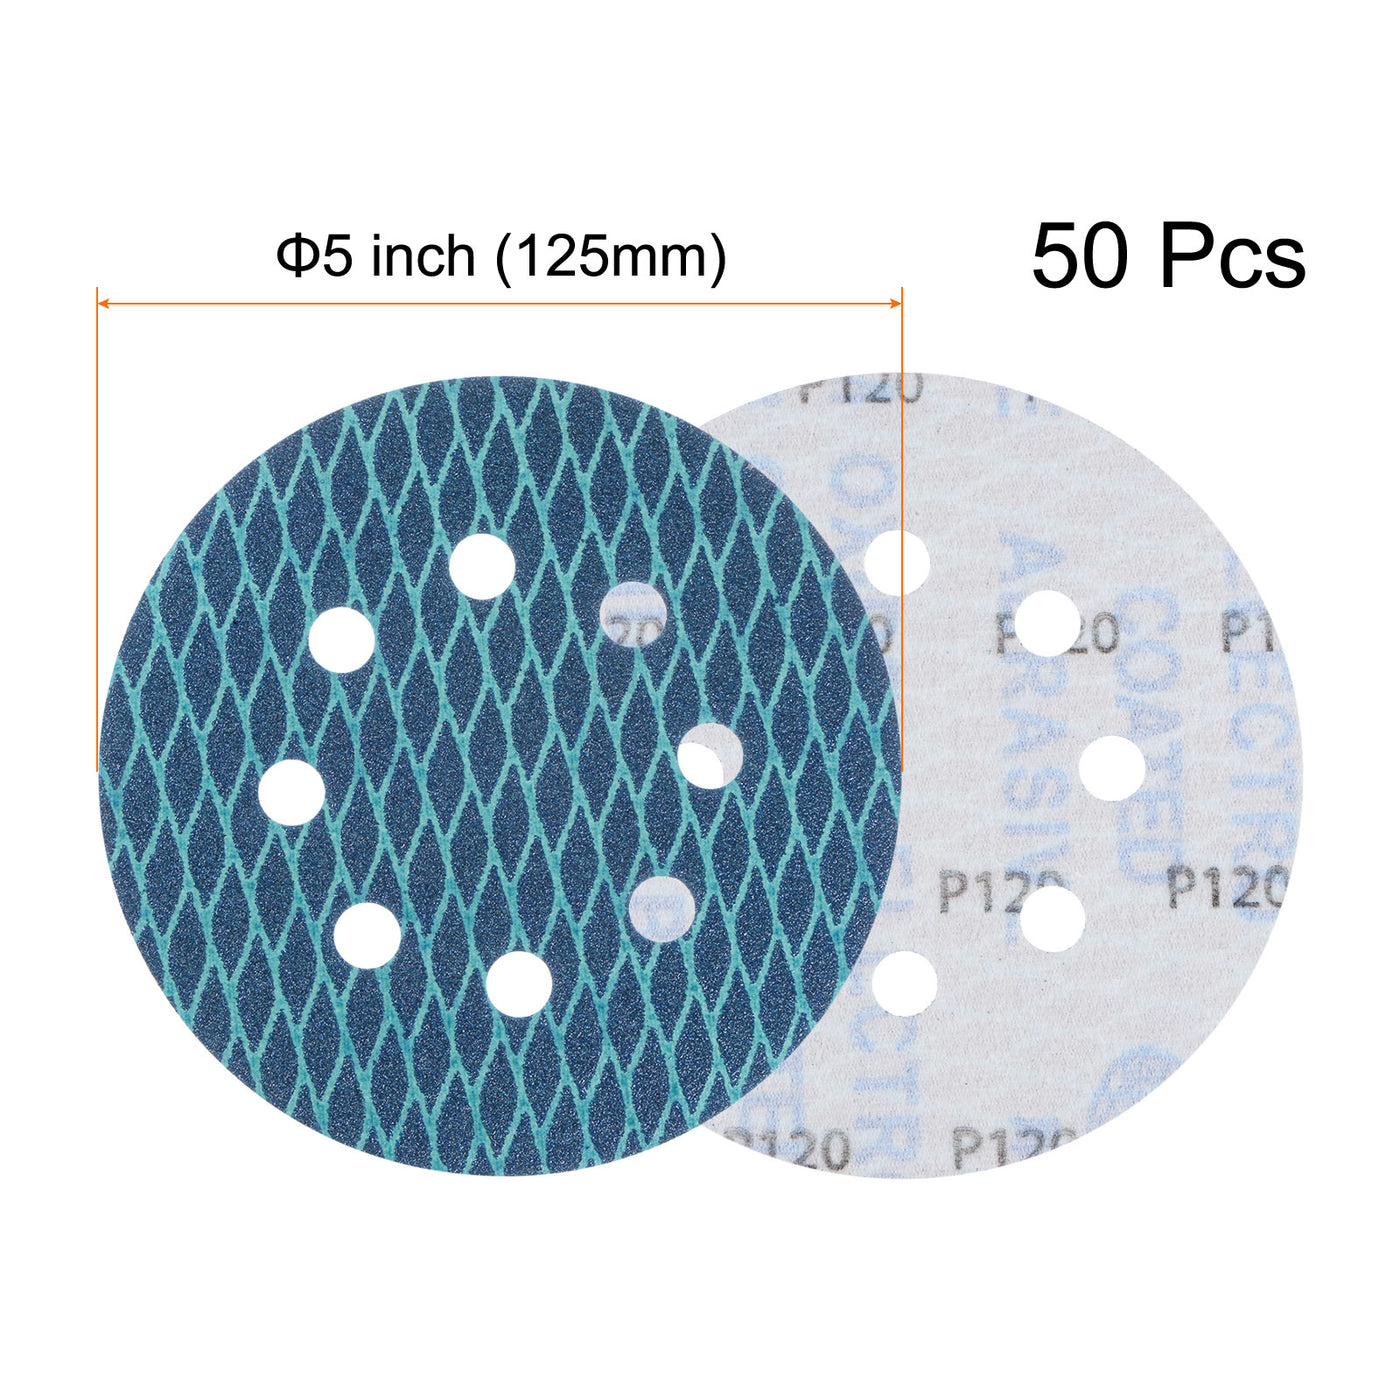 Harfington 50pcs Diamond Shape Sanding Discs 5" 120 Grit Hook & Loop Rhomb Sandpaper 8 Hole